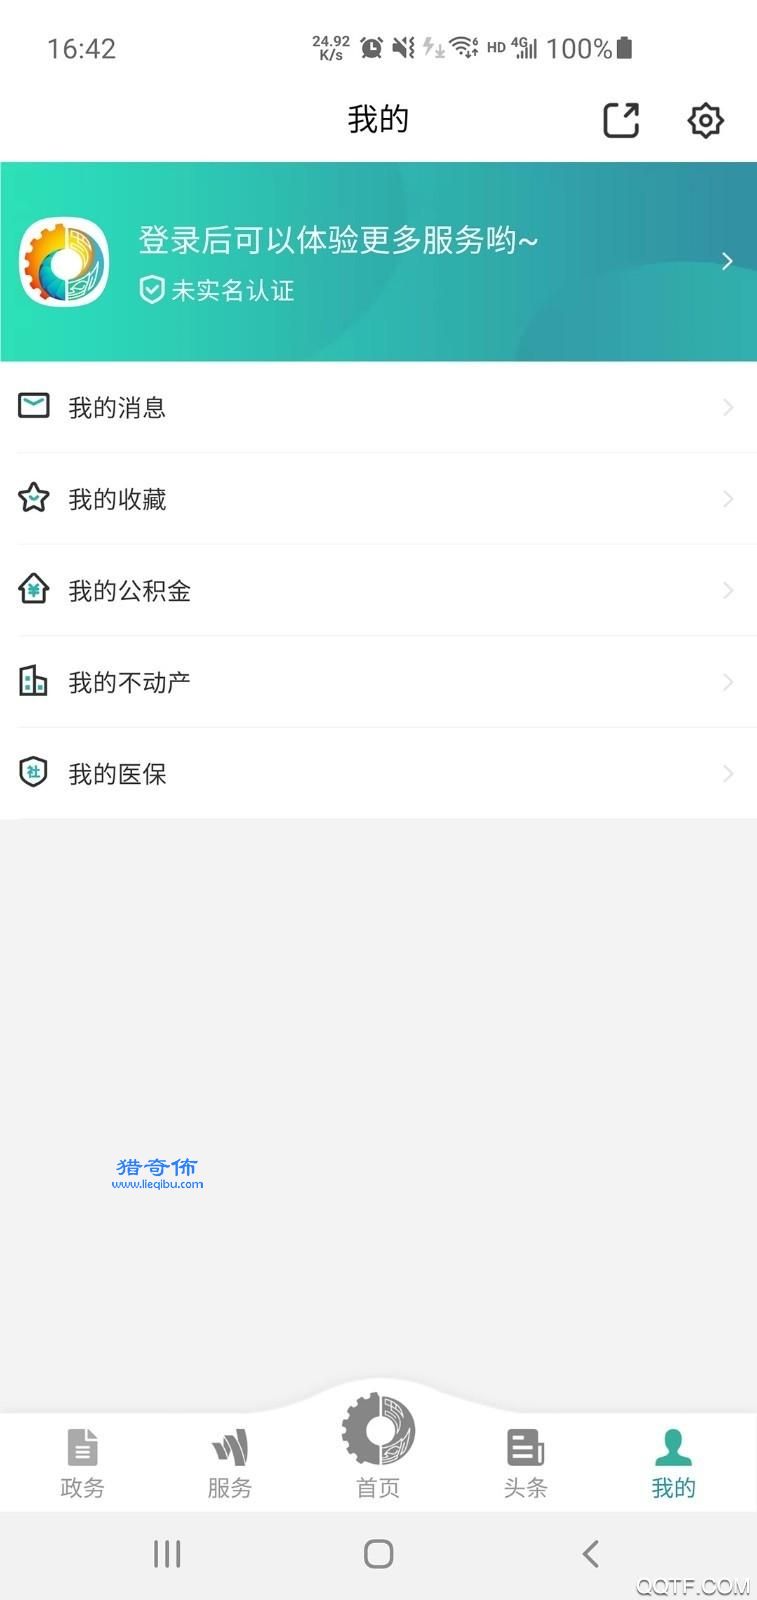 德阳市民通app官方版